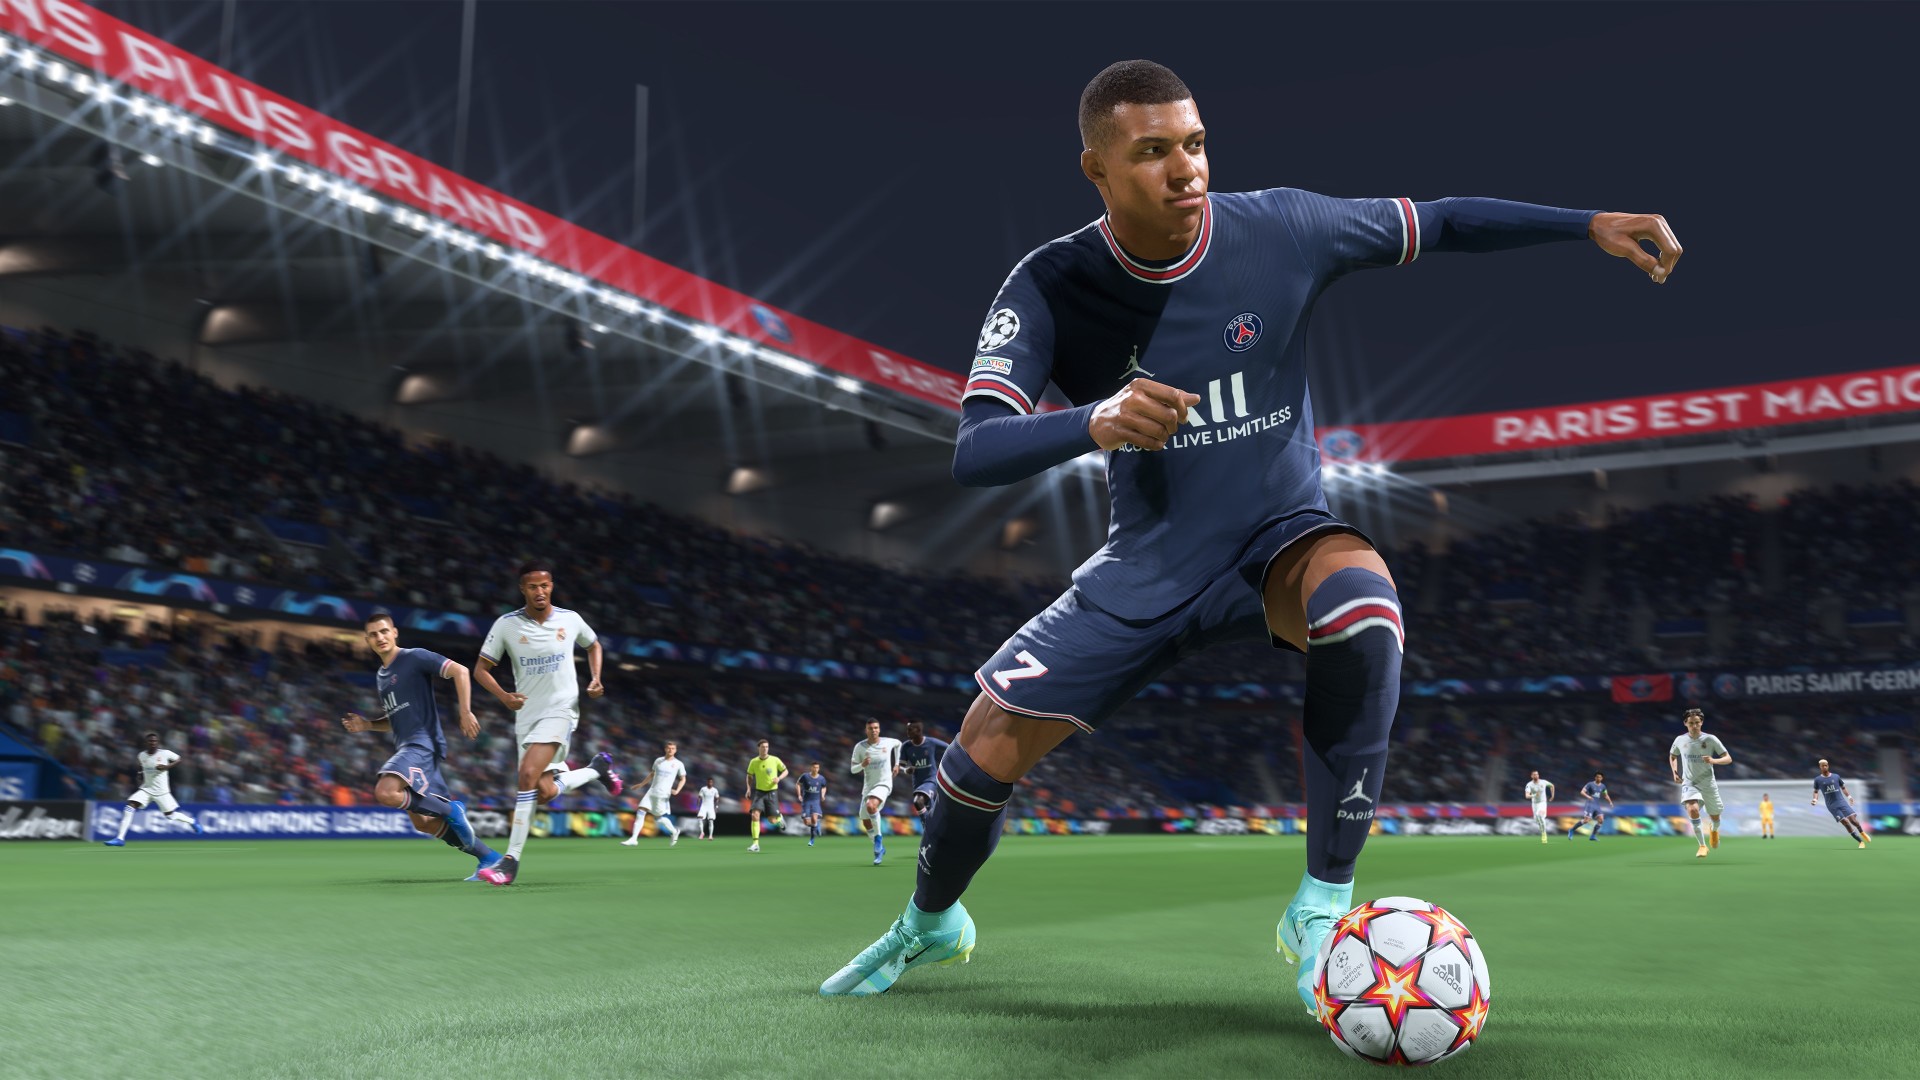 Next Week on Xbox: Neue Spiele vom 27. September bis 1. Oktober: FIFA 22